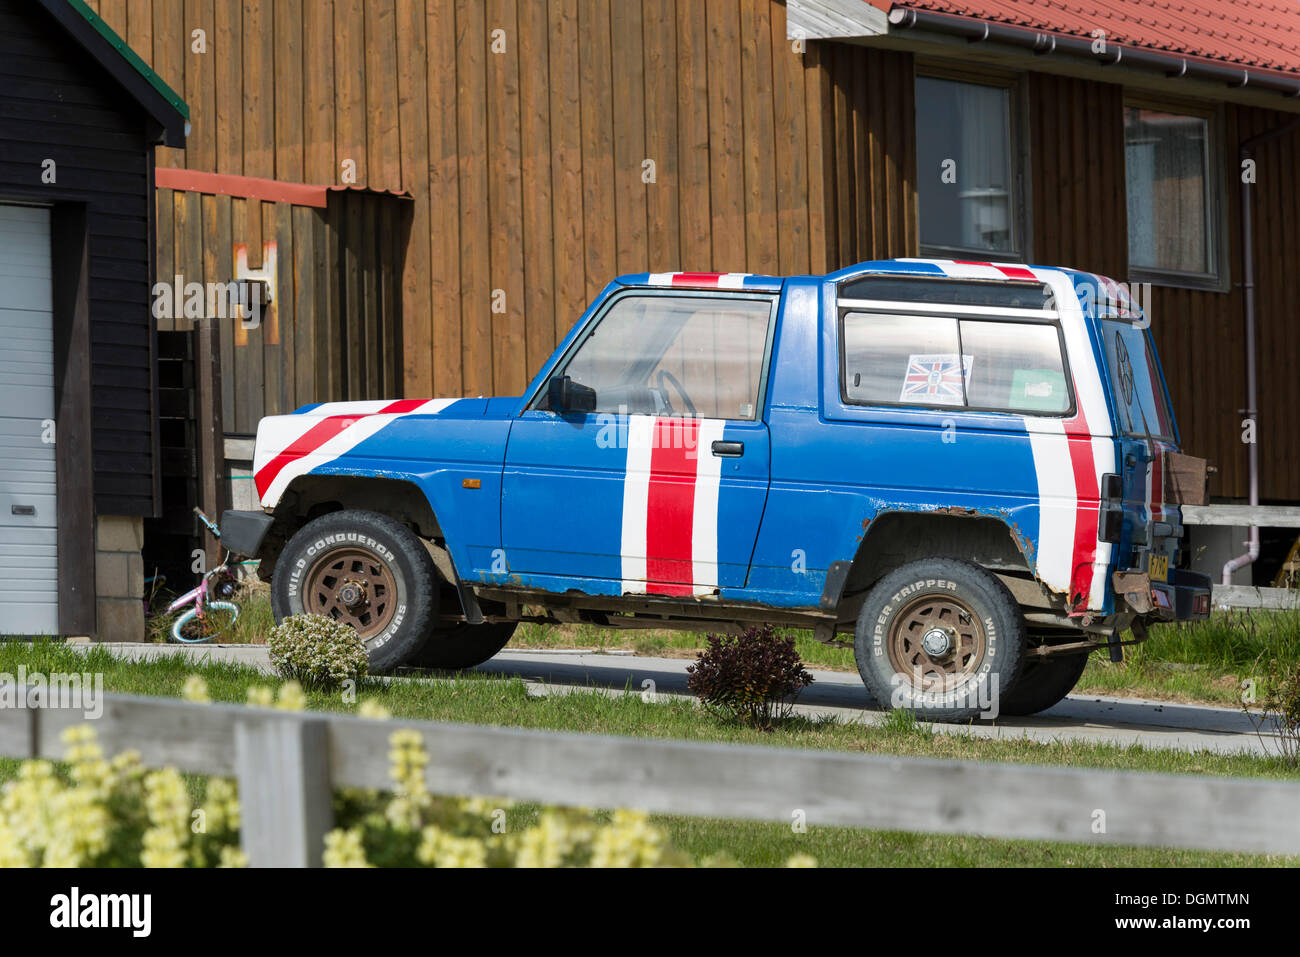 Auto lackiert mit Anschluß-Markierungsfahne oder Union Jack, parkte vor Wohnhäusern als Zeichen der Zugehörigkeit zum Vereinigten Königreich Stockfoto